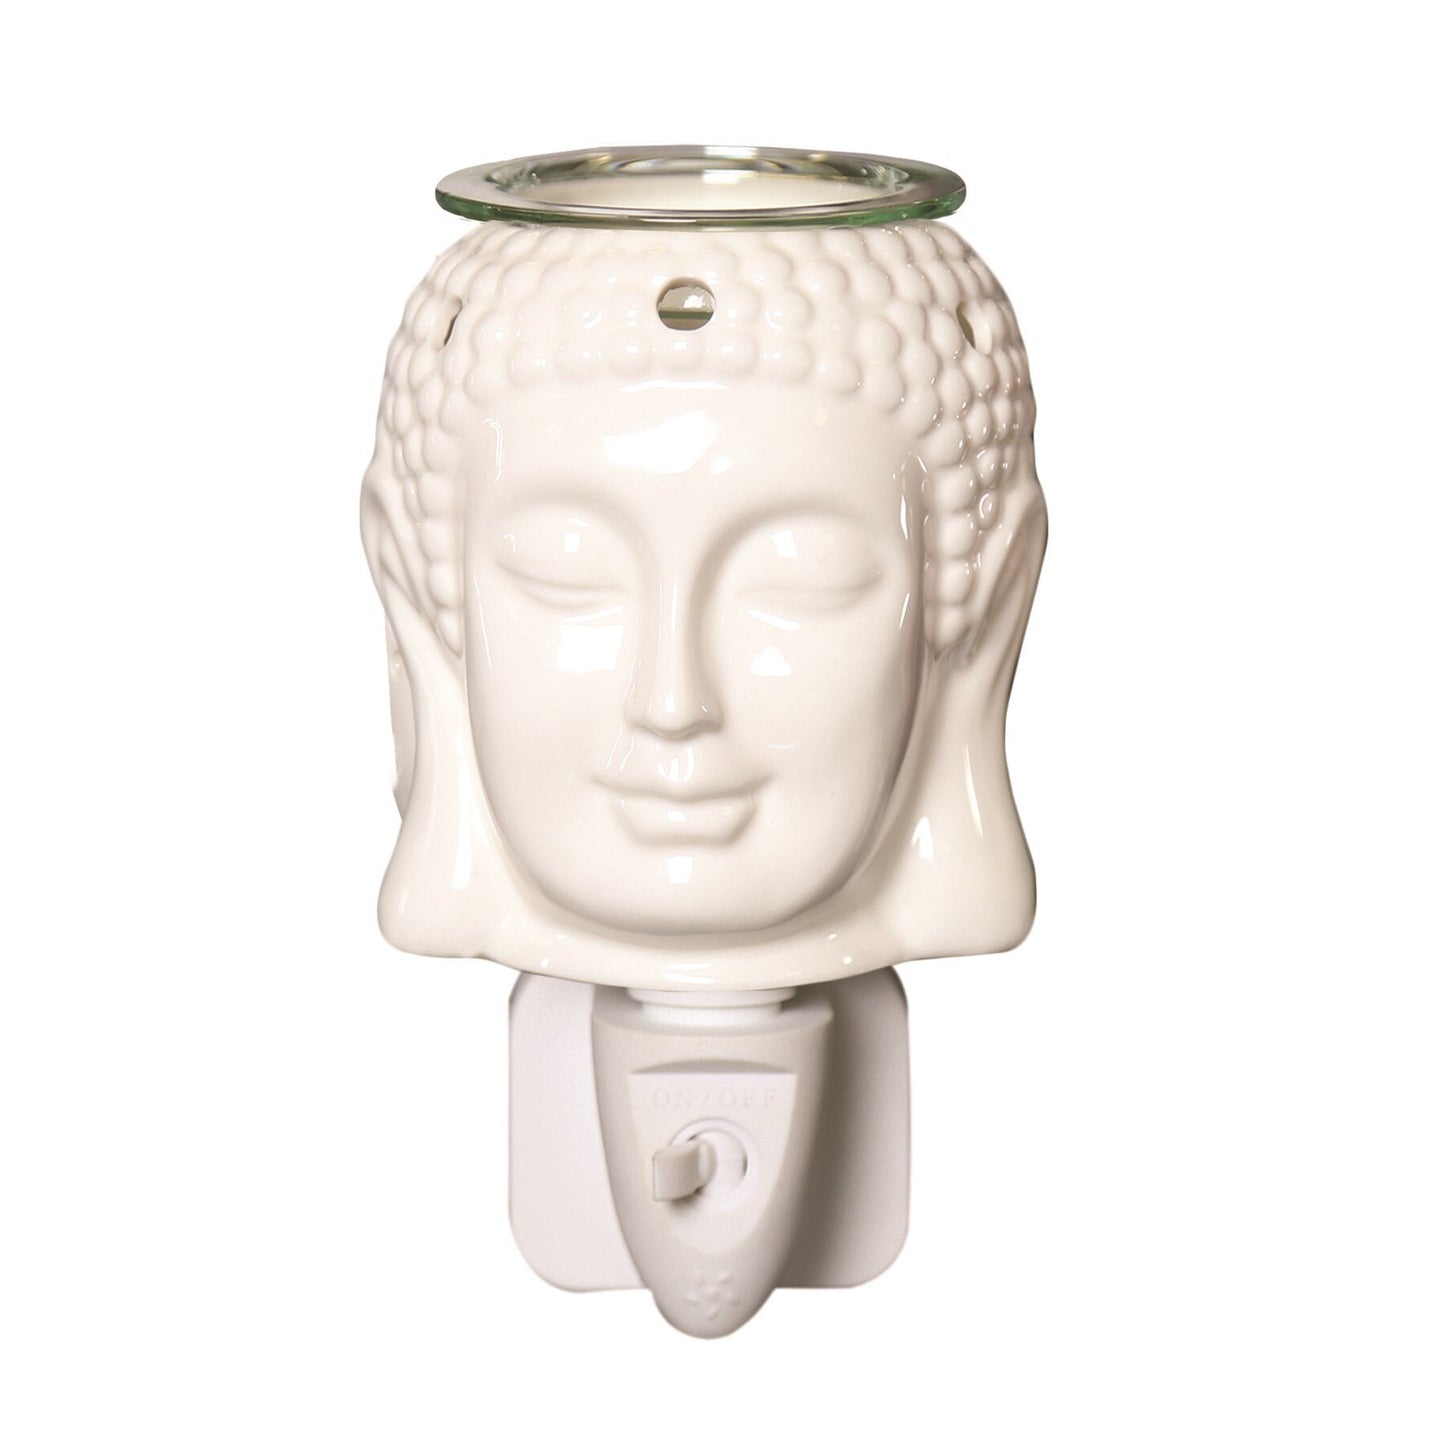 Wax Melt Burner Plug In - Ceramic Buddha AR1569